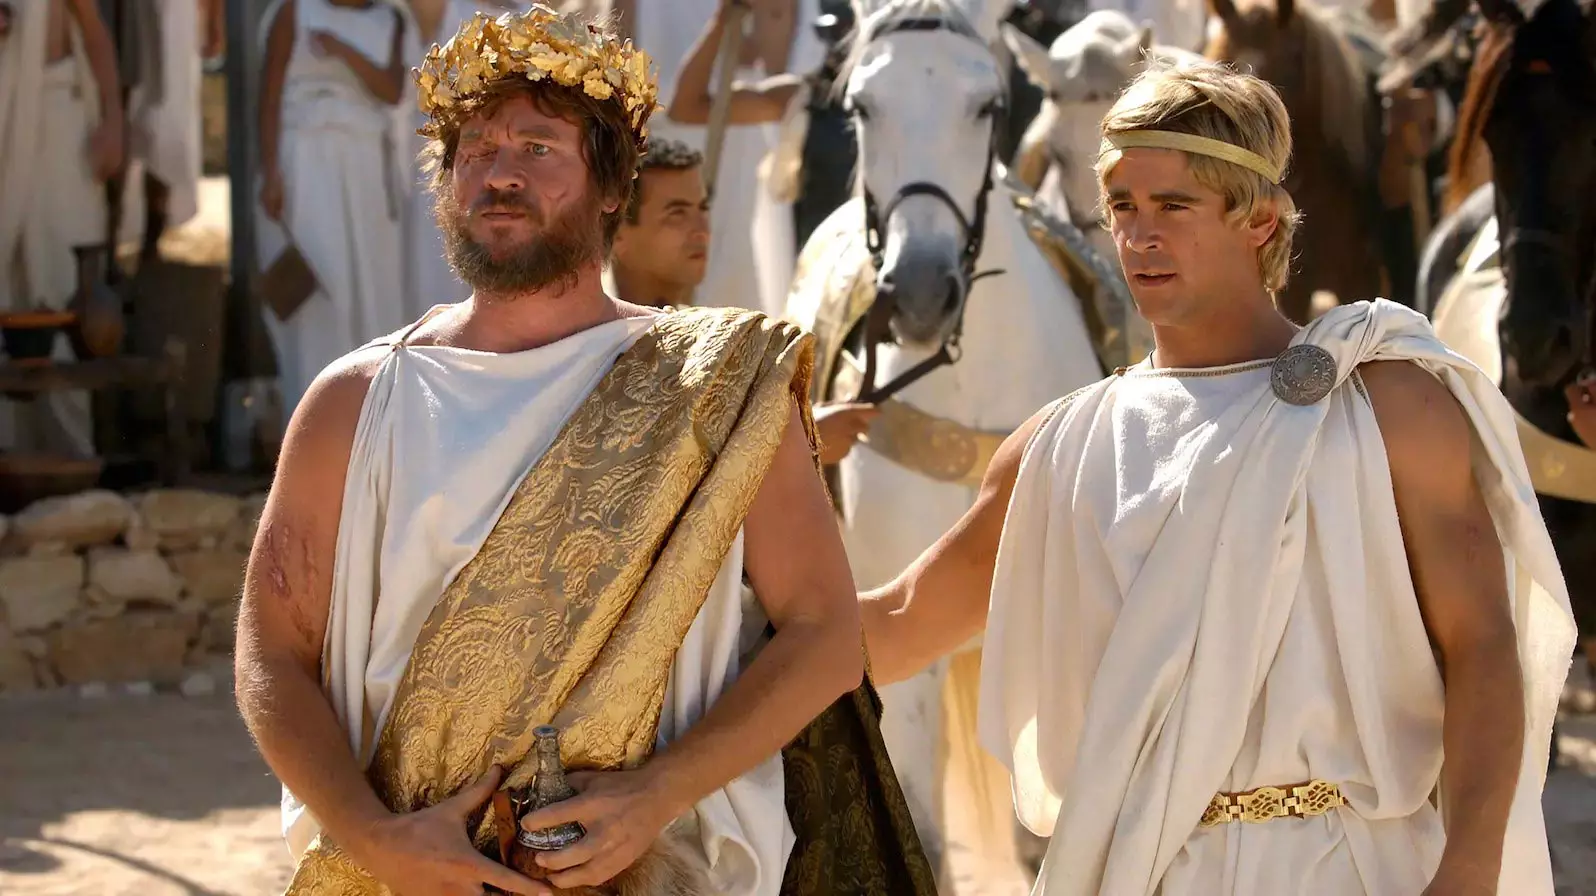 کالین فارل در نقش اسکندر مقدونی در کنار وال کیلمر در لباسهای یونان باستان و تاج برگ طلایی